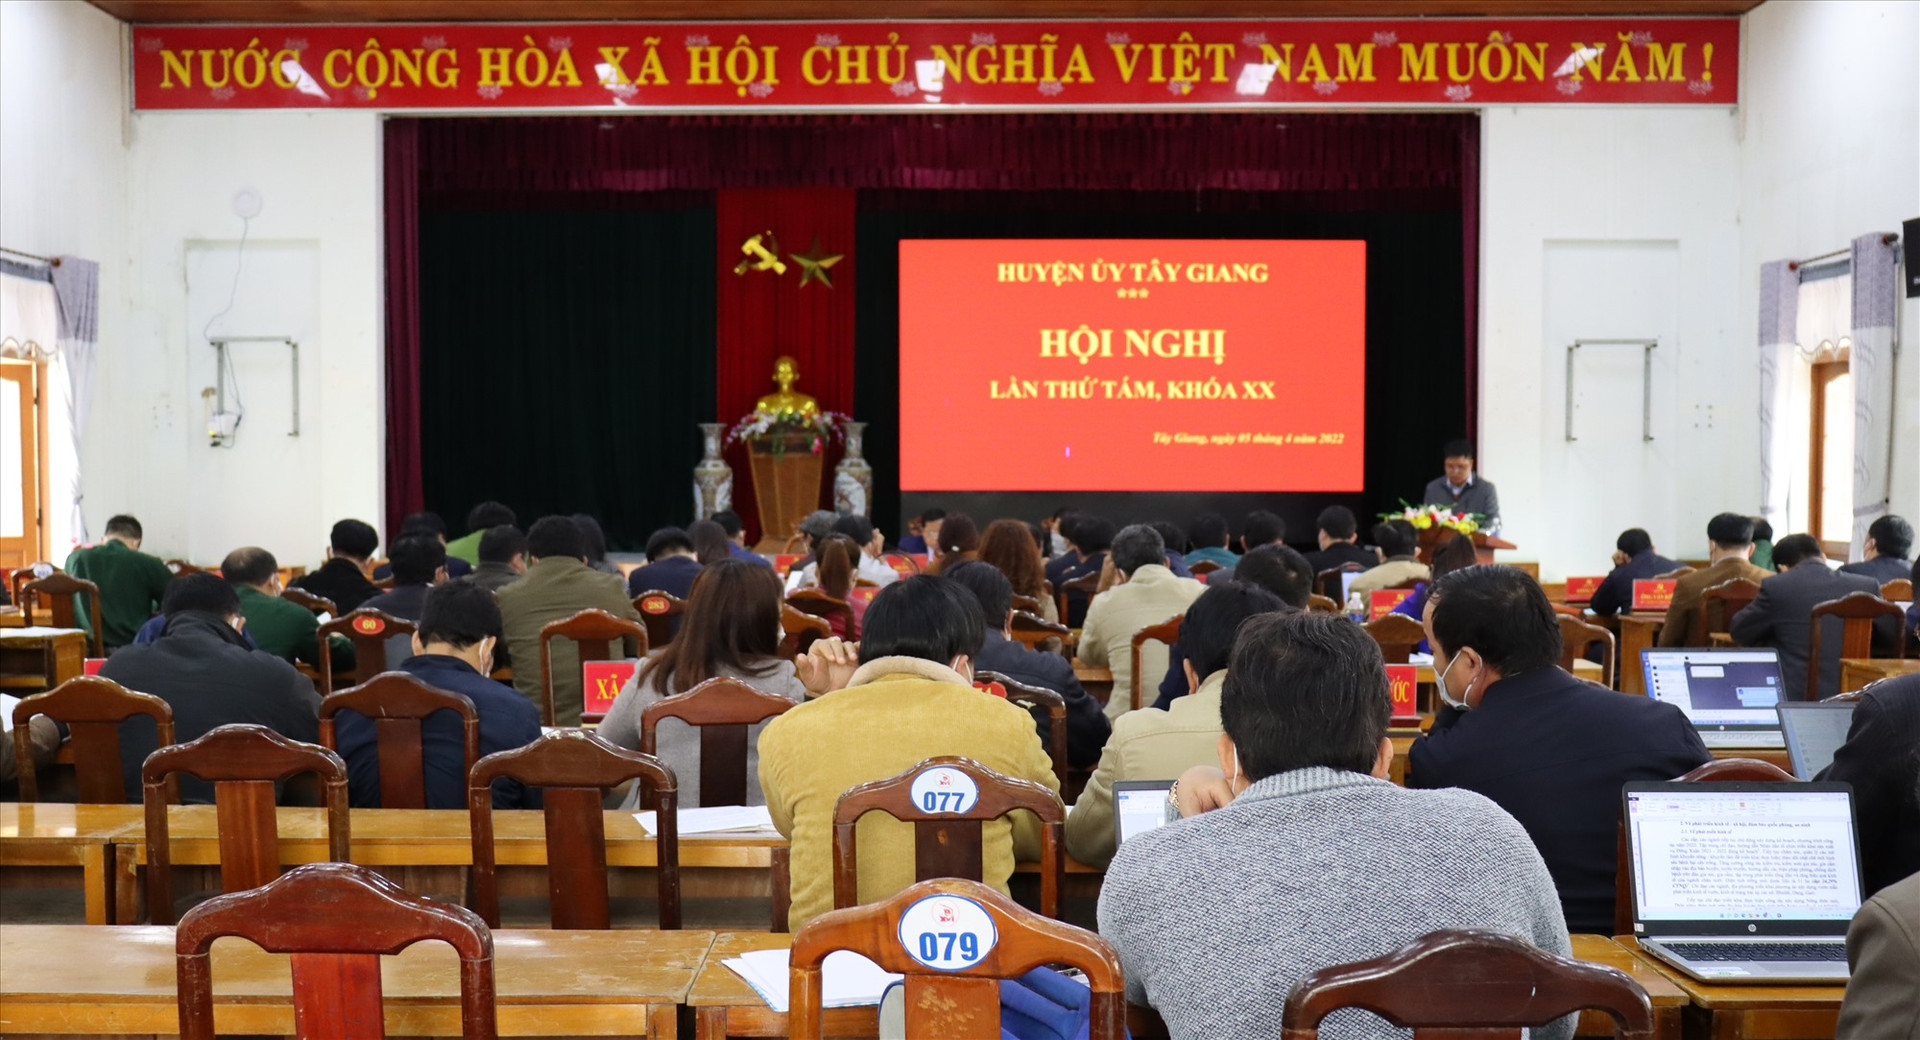 Huyện ủy Tây Giang tổ chức hội nghị lần thứ tám, khóa XX, nhiệm kỳ 2020-2025. Ảnh H.Thúy